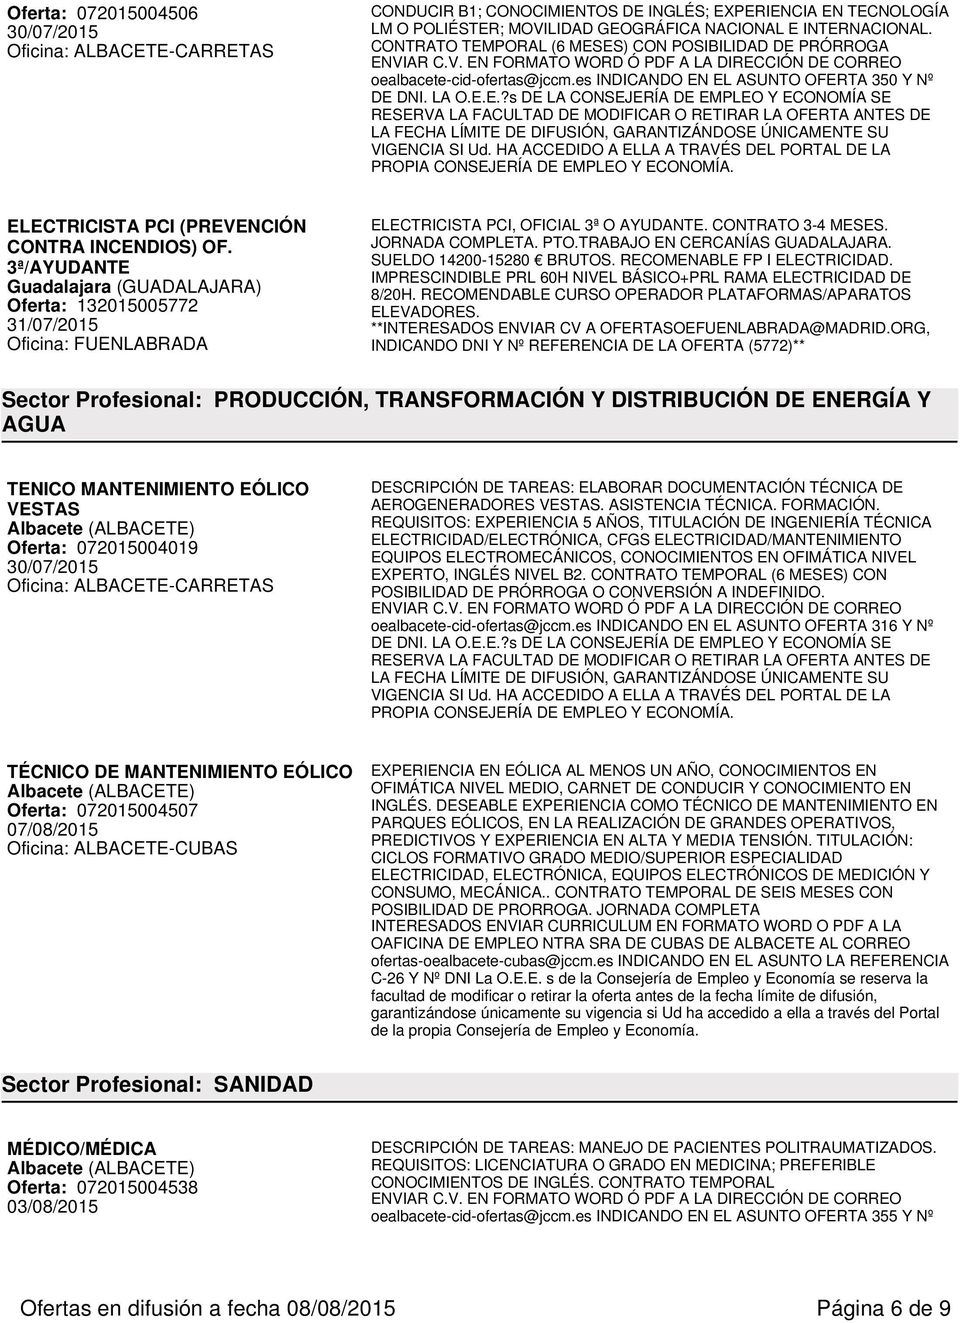 3ª/AYUDANTE Guadalajara (GUADALAJARA) Oferta: 132015005772 31/07/2015 Oficina: FUENLABRADA ELECTRICISTA PCI, OFICIAL 3ª O AYUDANTE. CONTRATO 3-4 MESES. JORNADA COMPLETA. PTO.